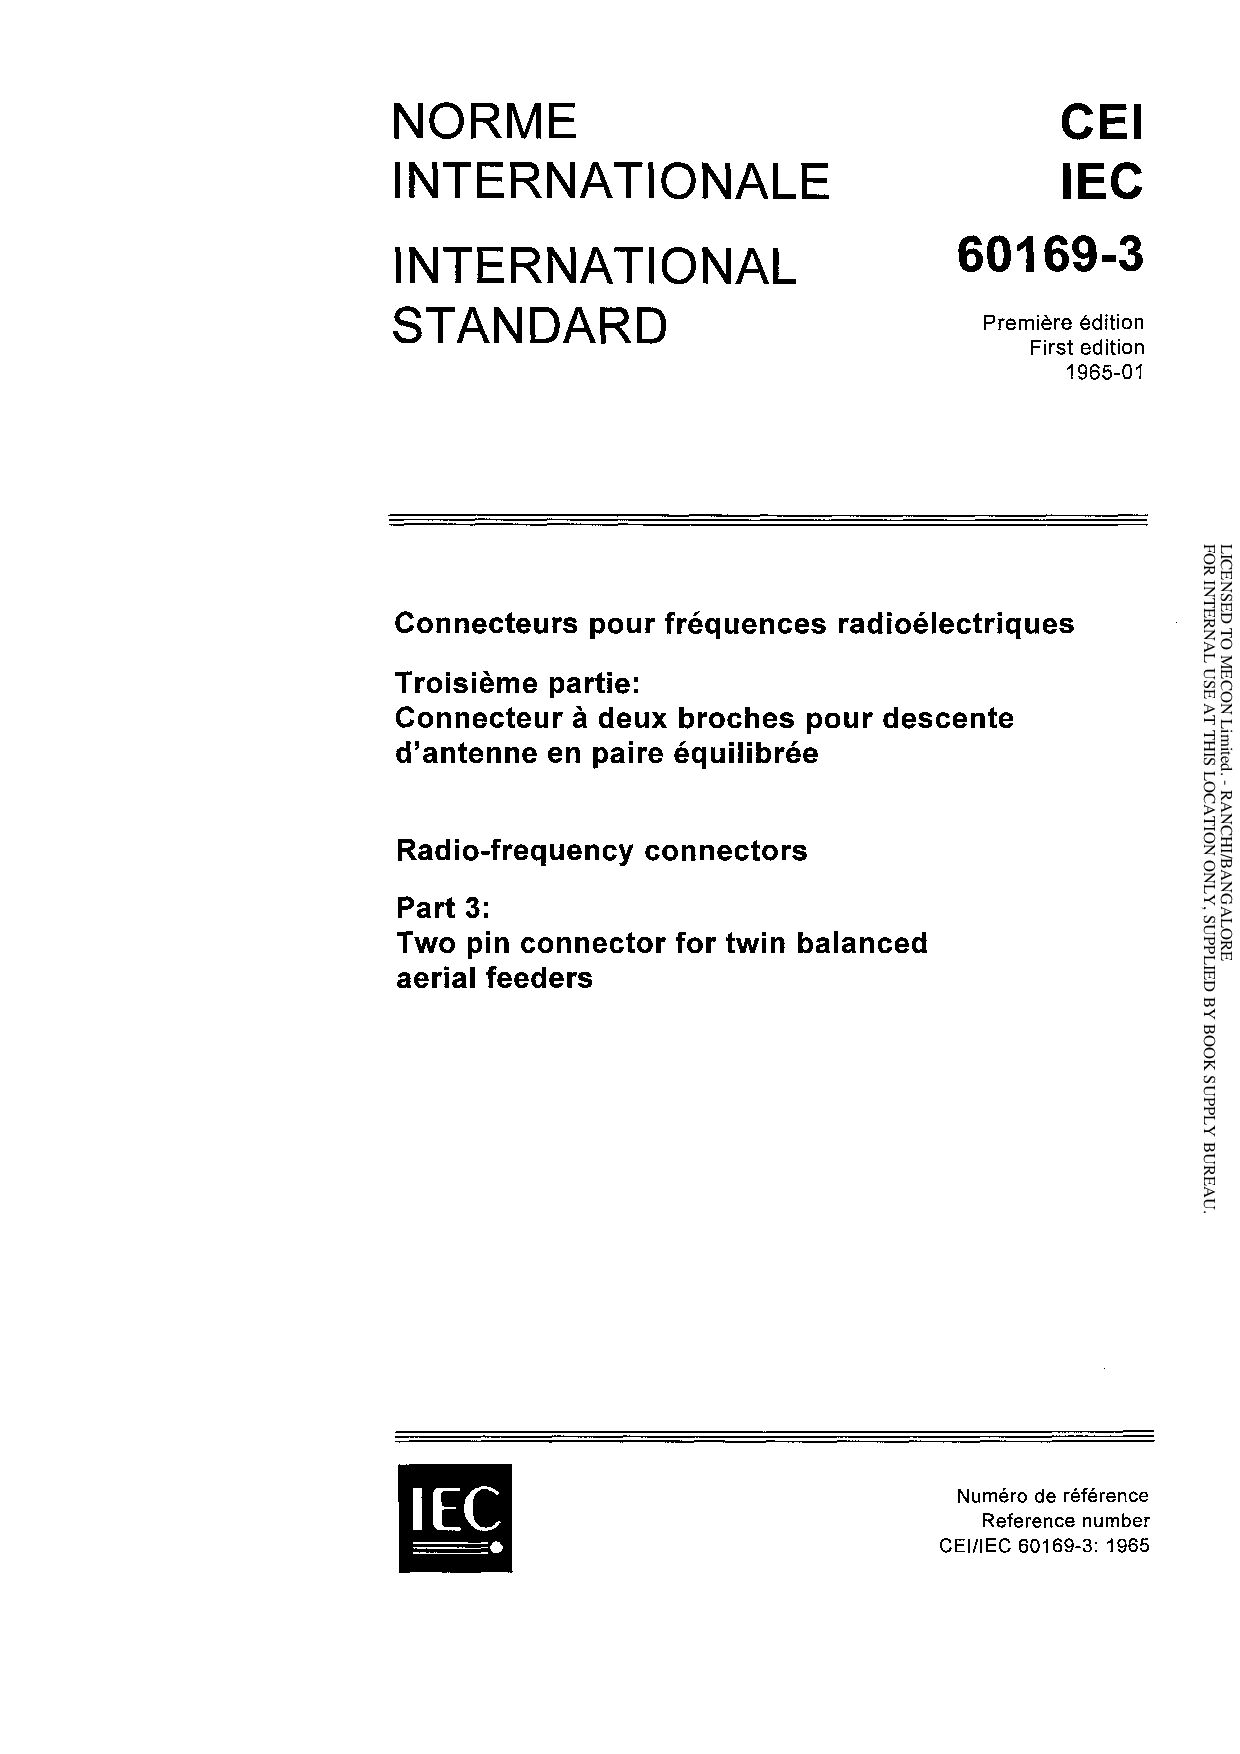 IEC 60169-3:1965